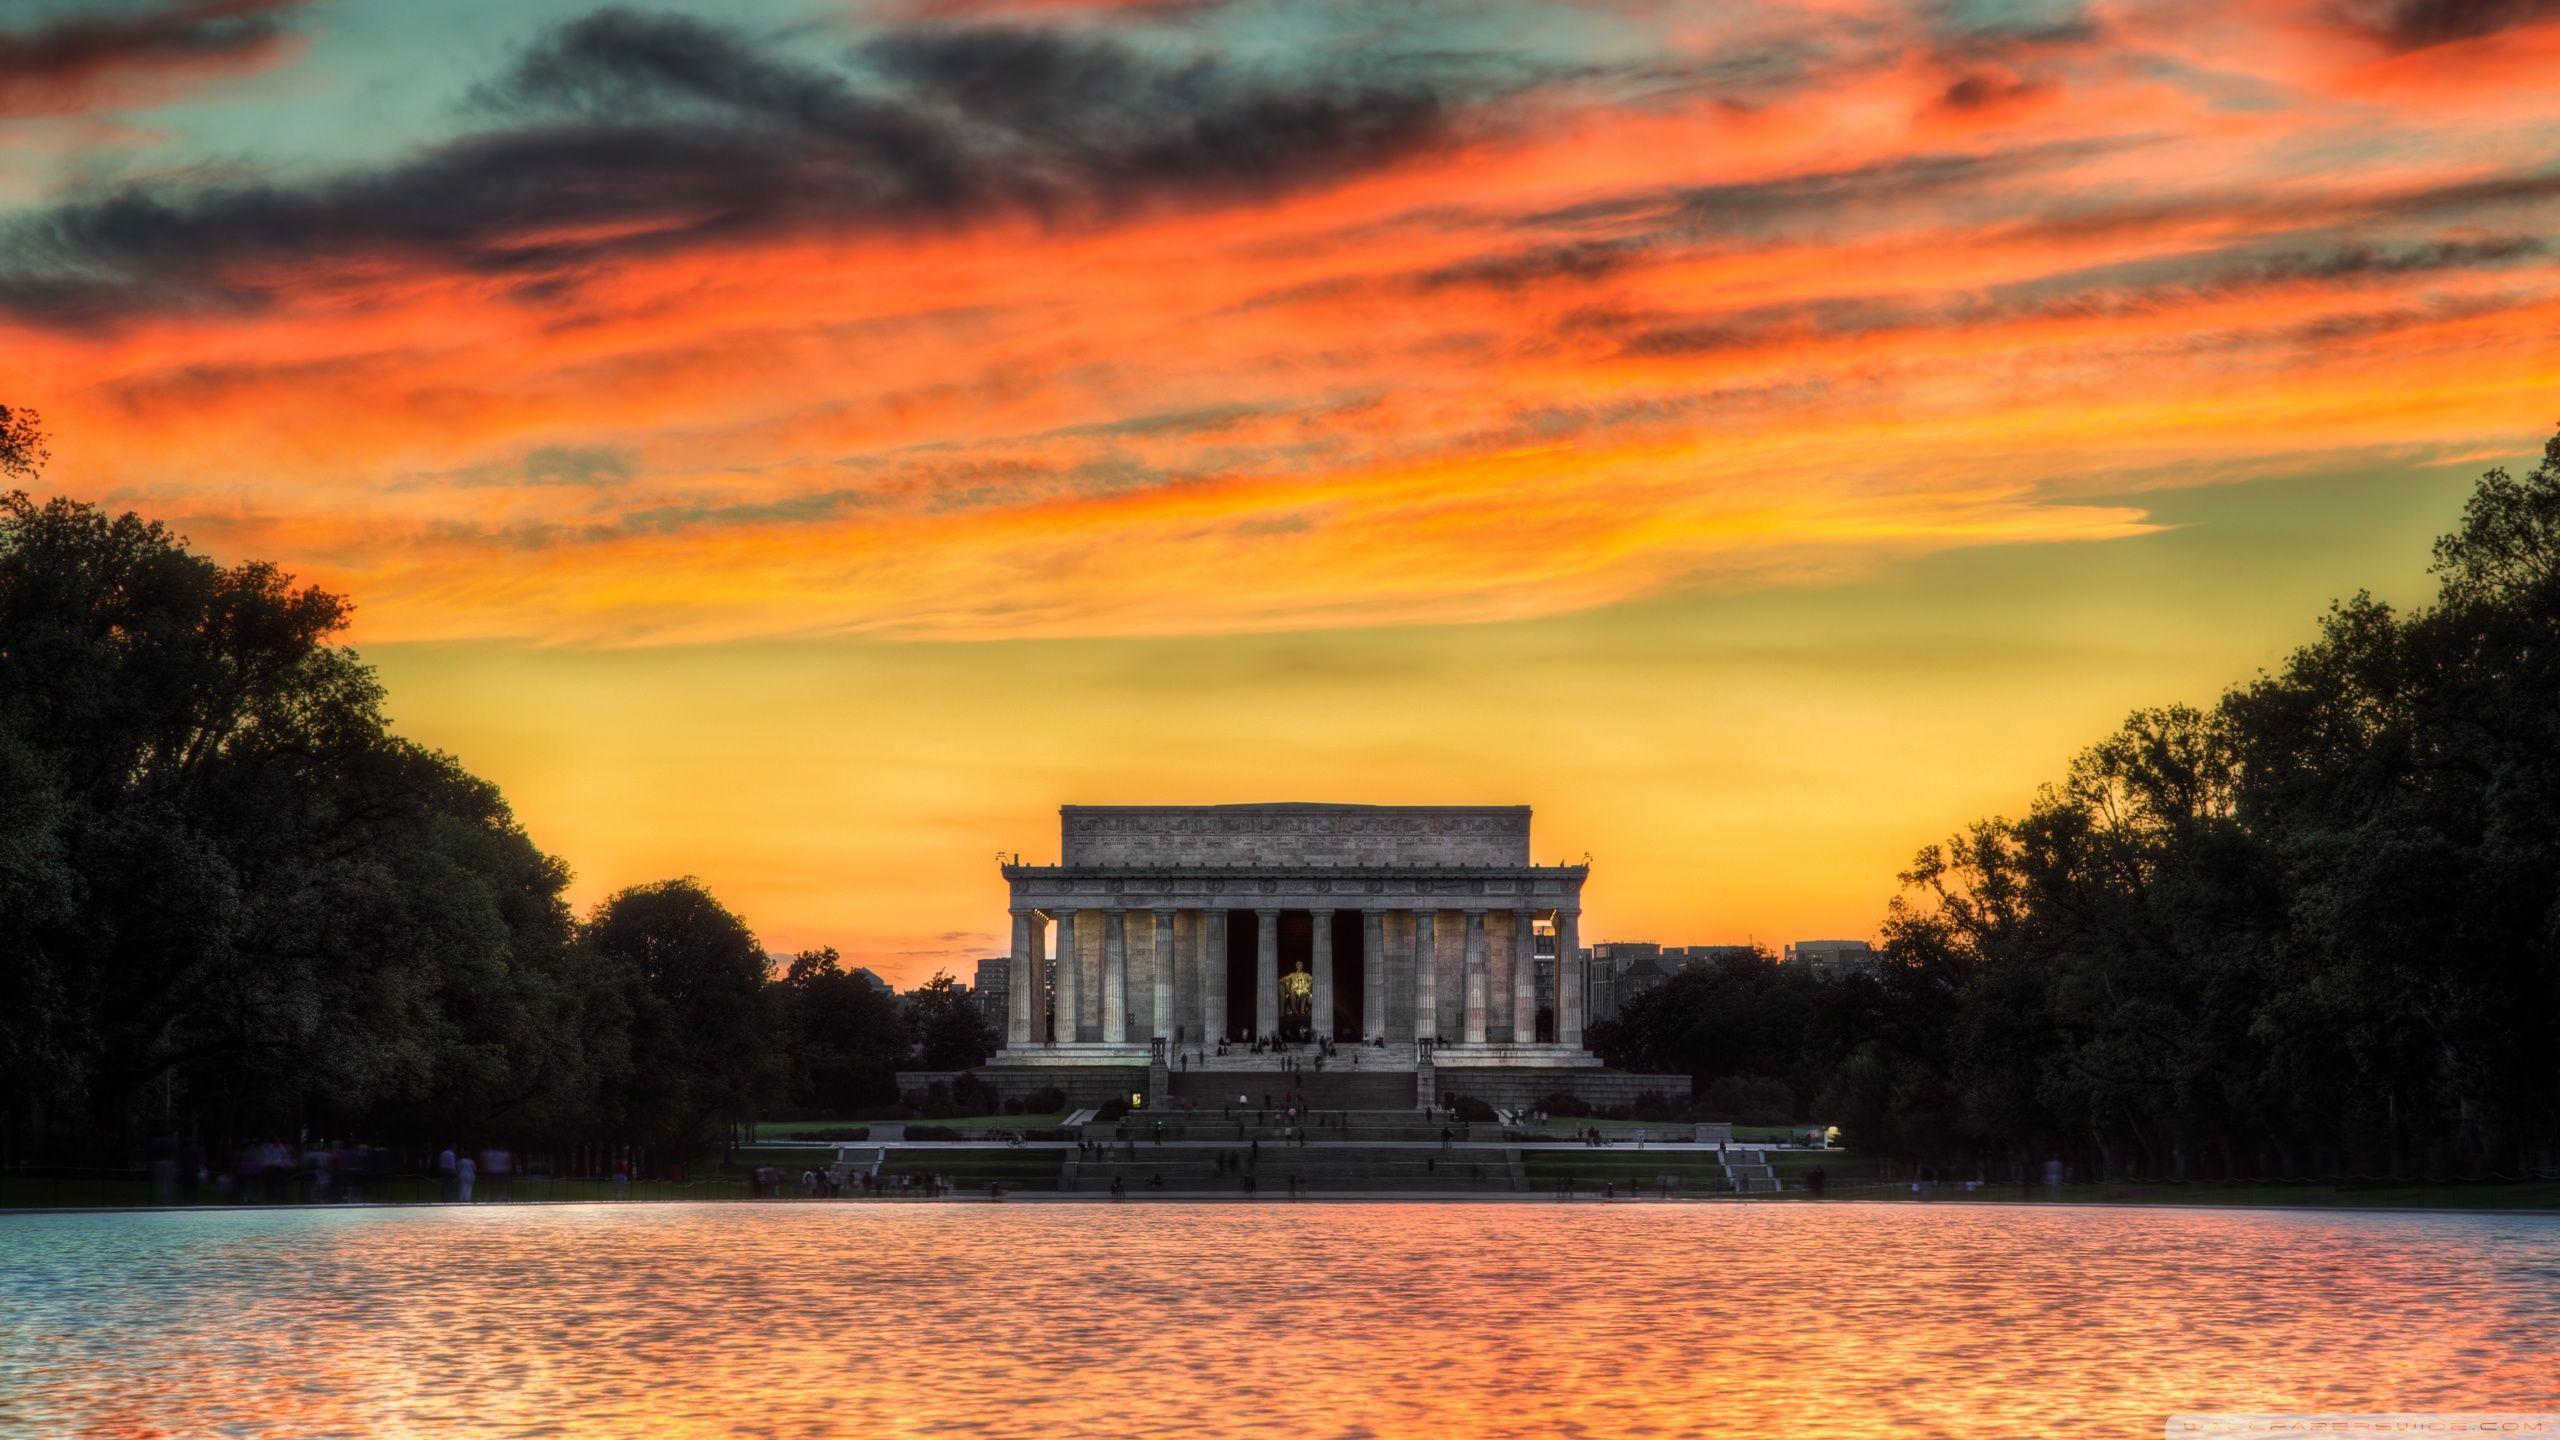 Lincoln Memorial Sunset HD desktop wallpaper, Widescreen, High